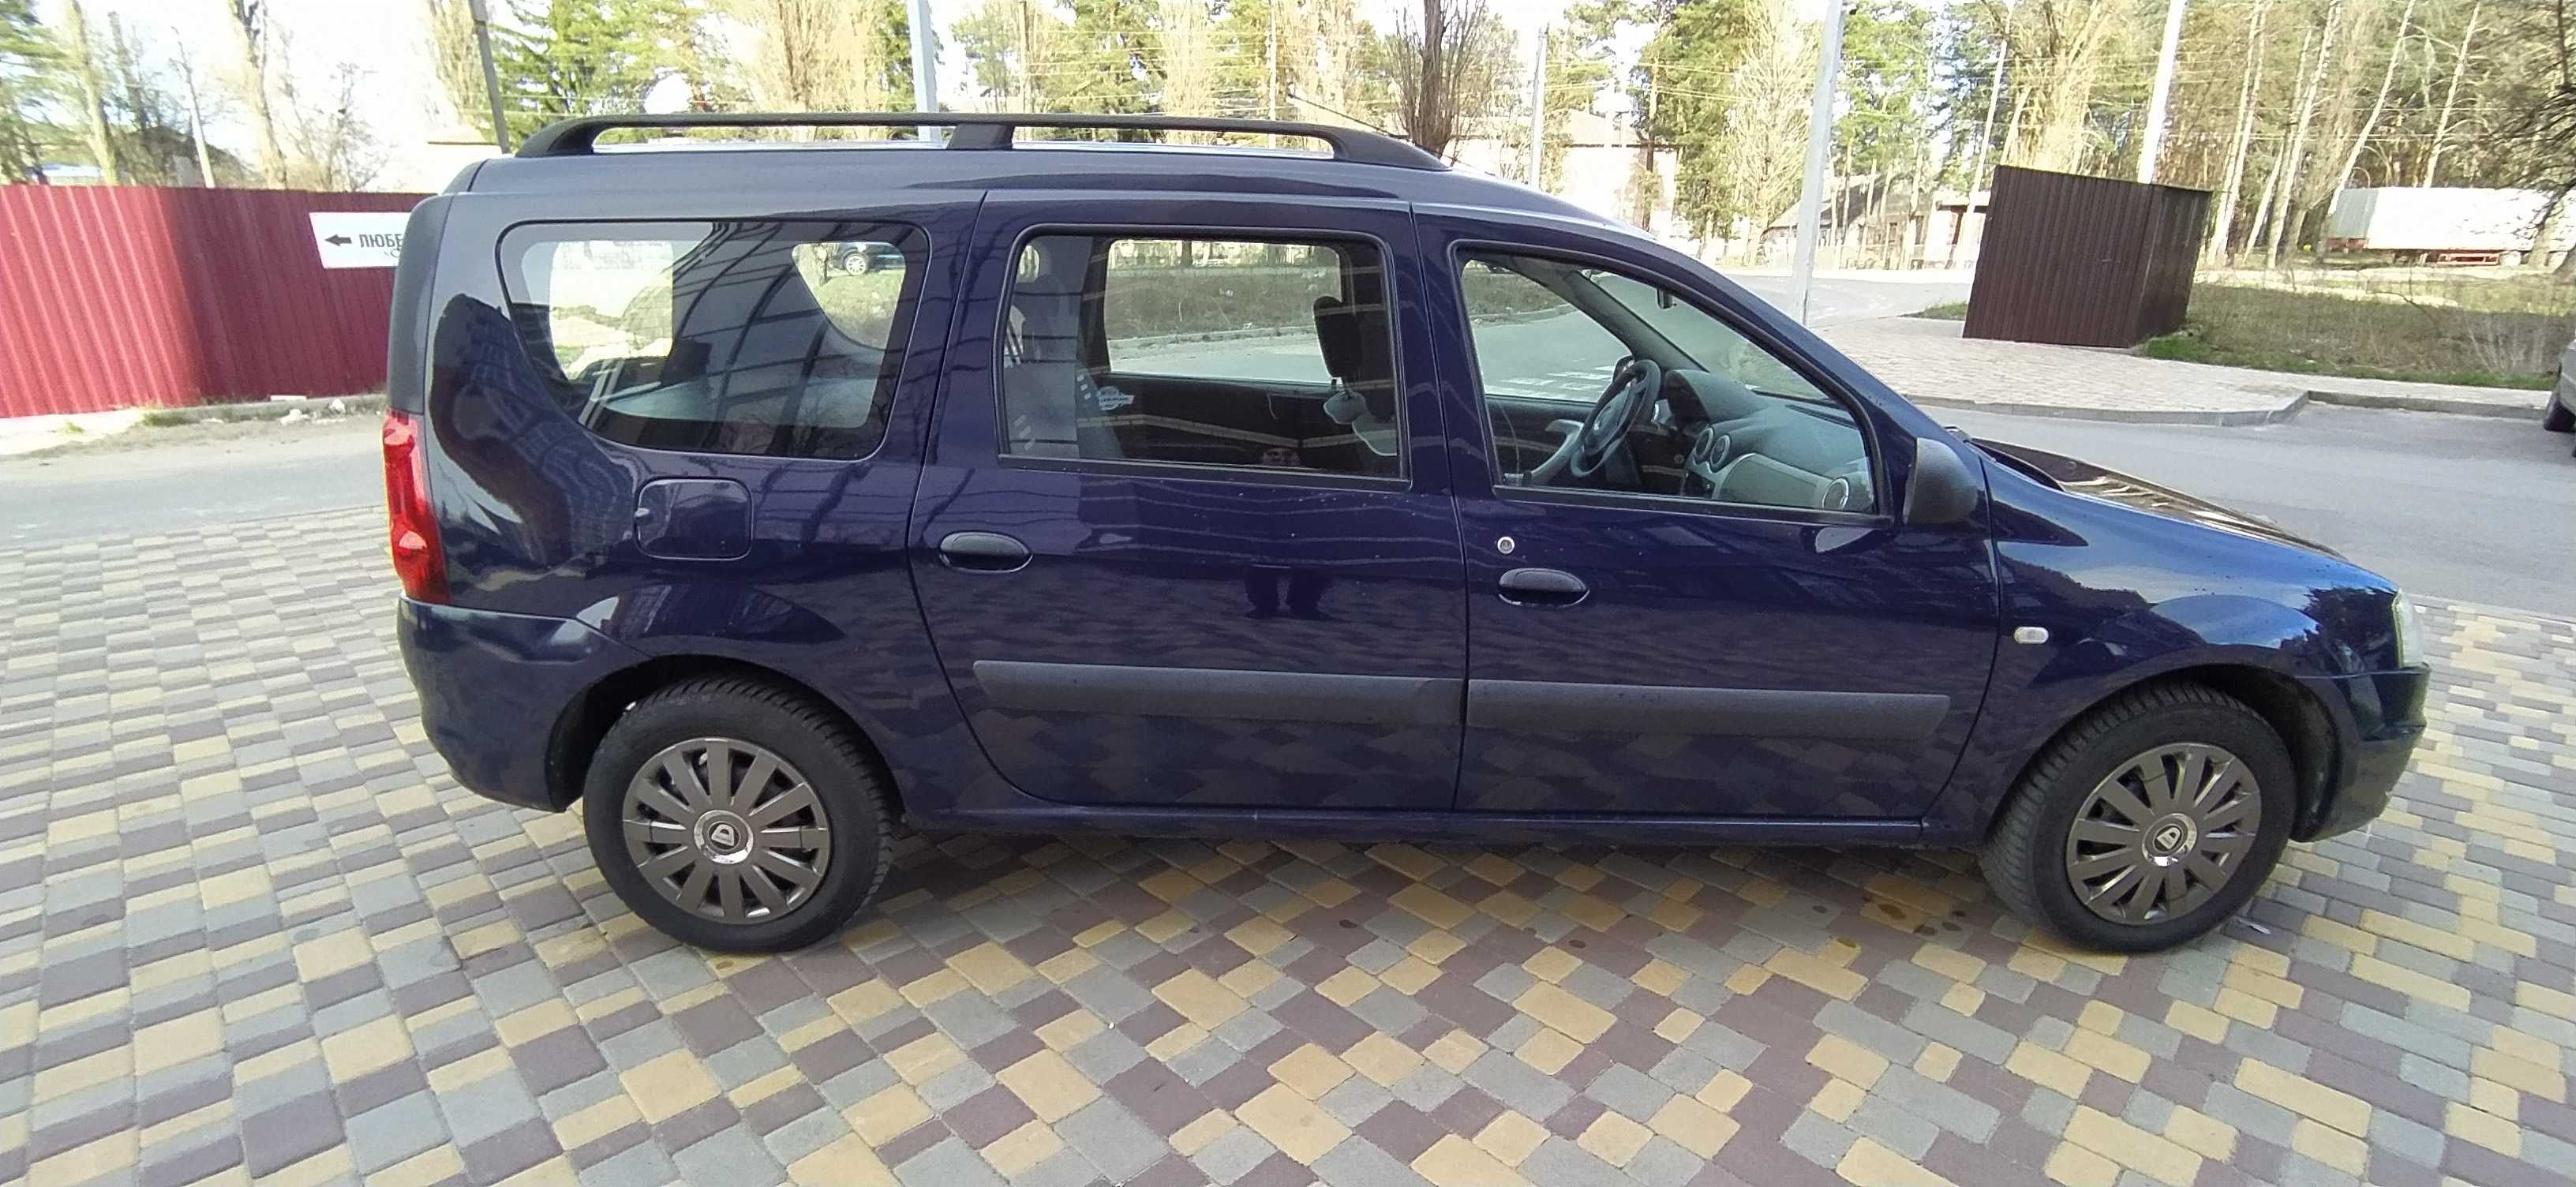 Продам свежепригнанный Dacia Logan MCV 1,6 из Германии